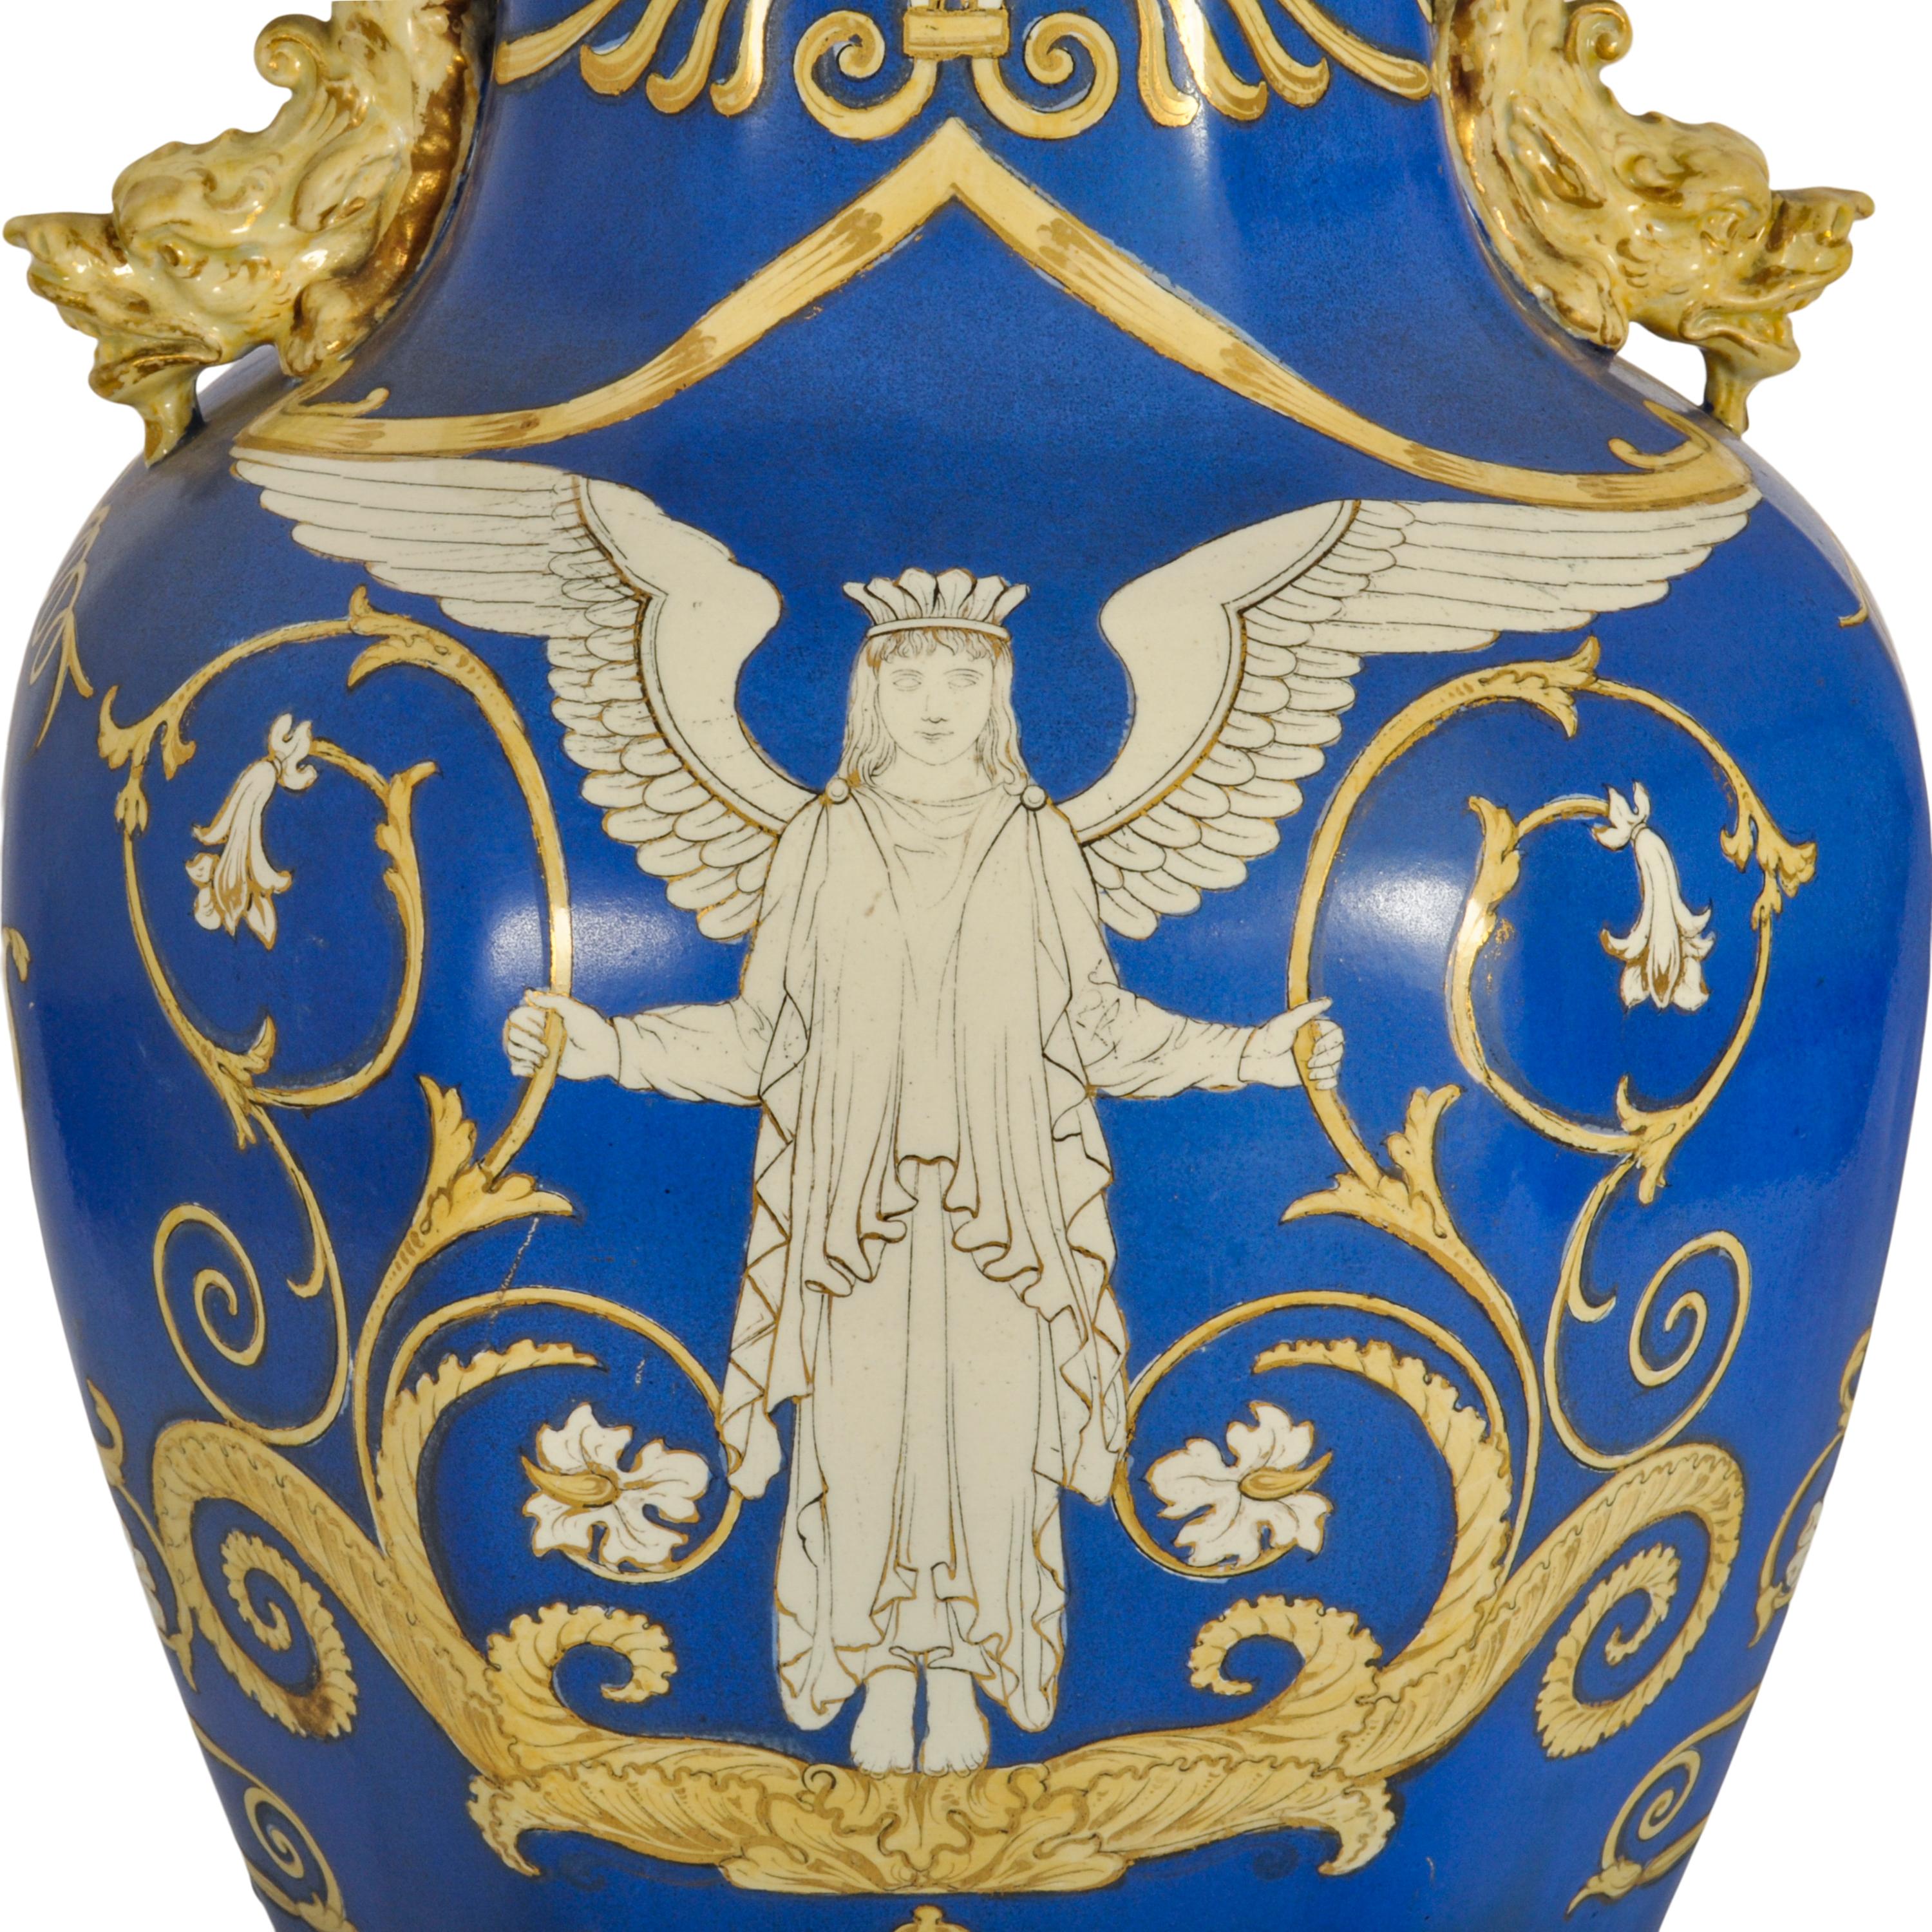 Large Antique English Morley & Ashworth 'Mason's' Ironstone Pottery Angel Vase For Sale 5